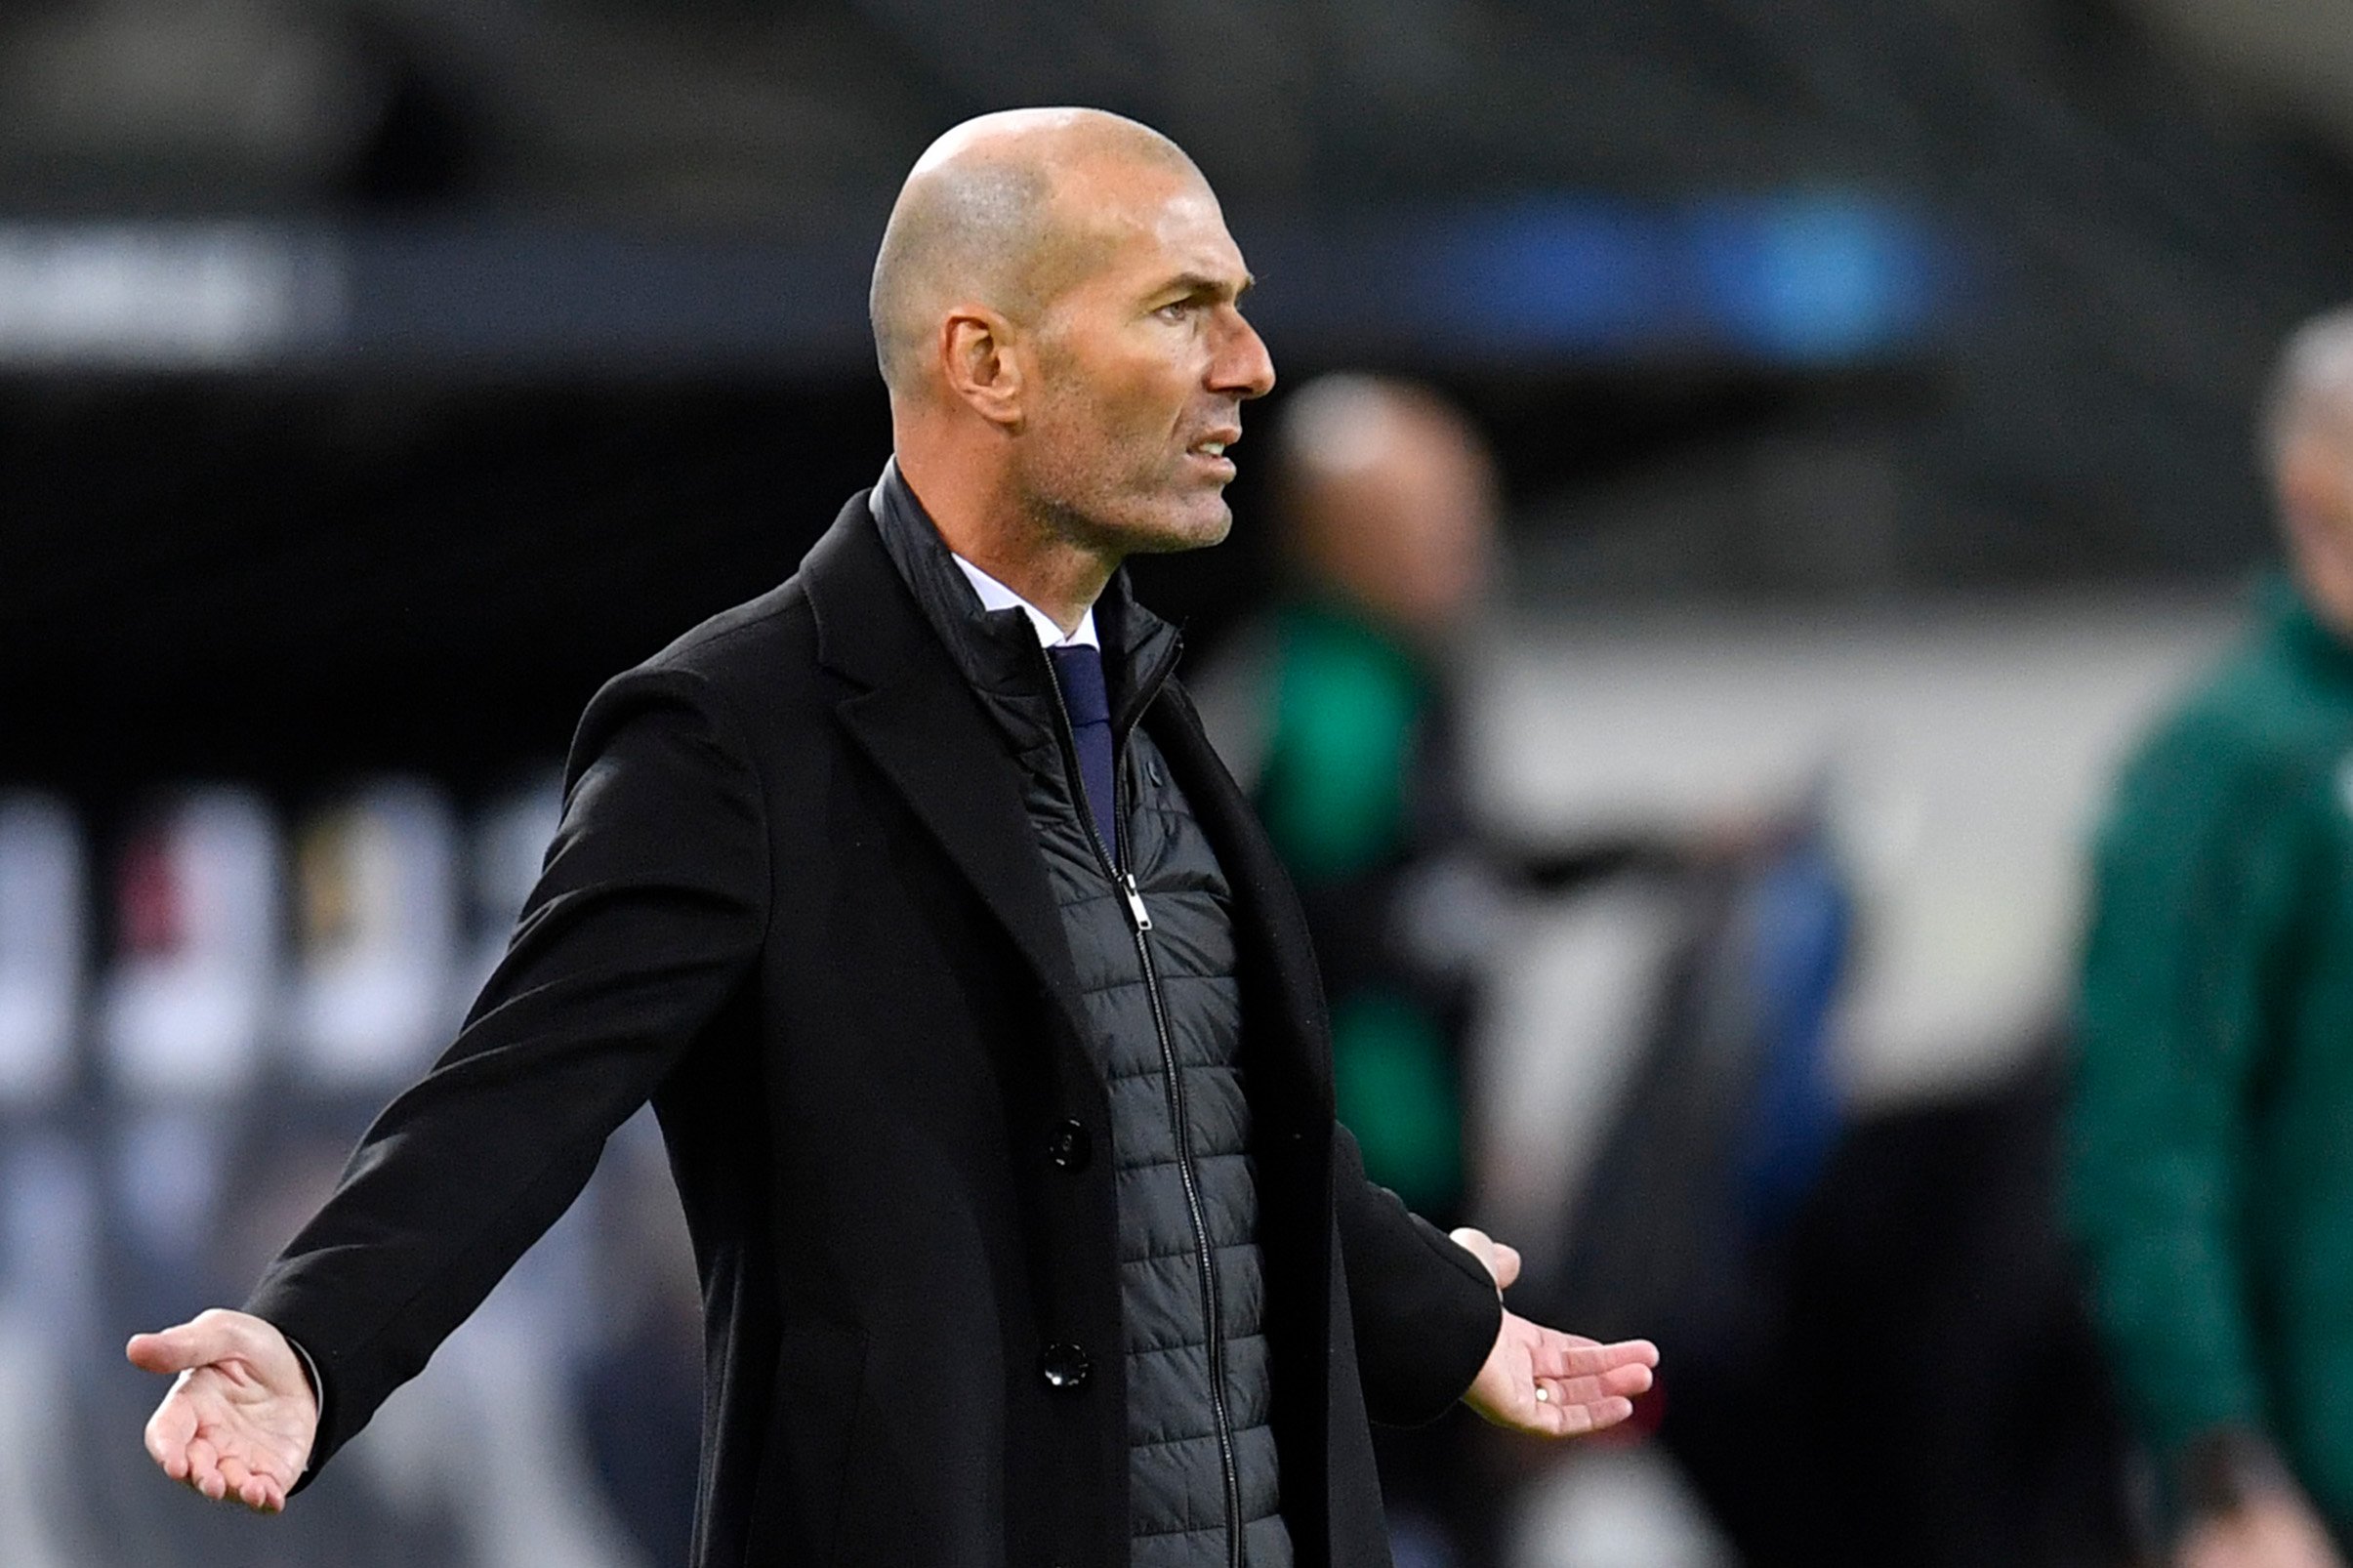 Comunica que se'n va amb Zidane al PSG després que Florentino Pérez no hagi mogut un dit per evitar-ho